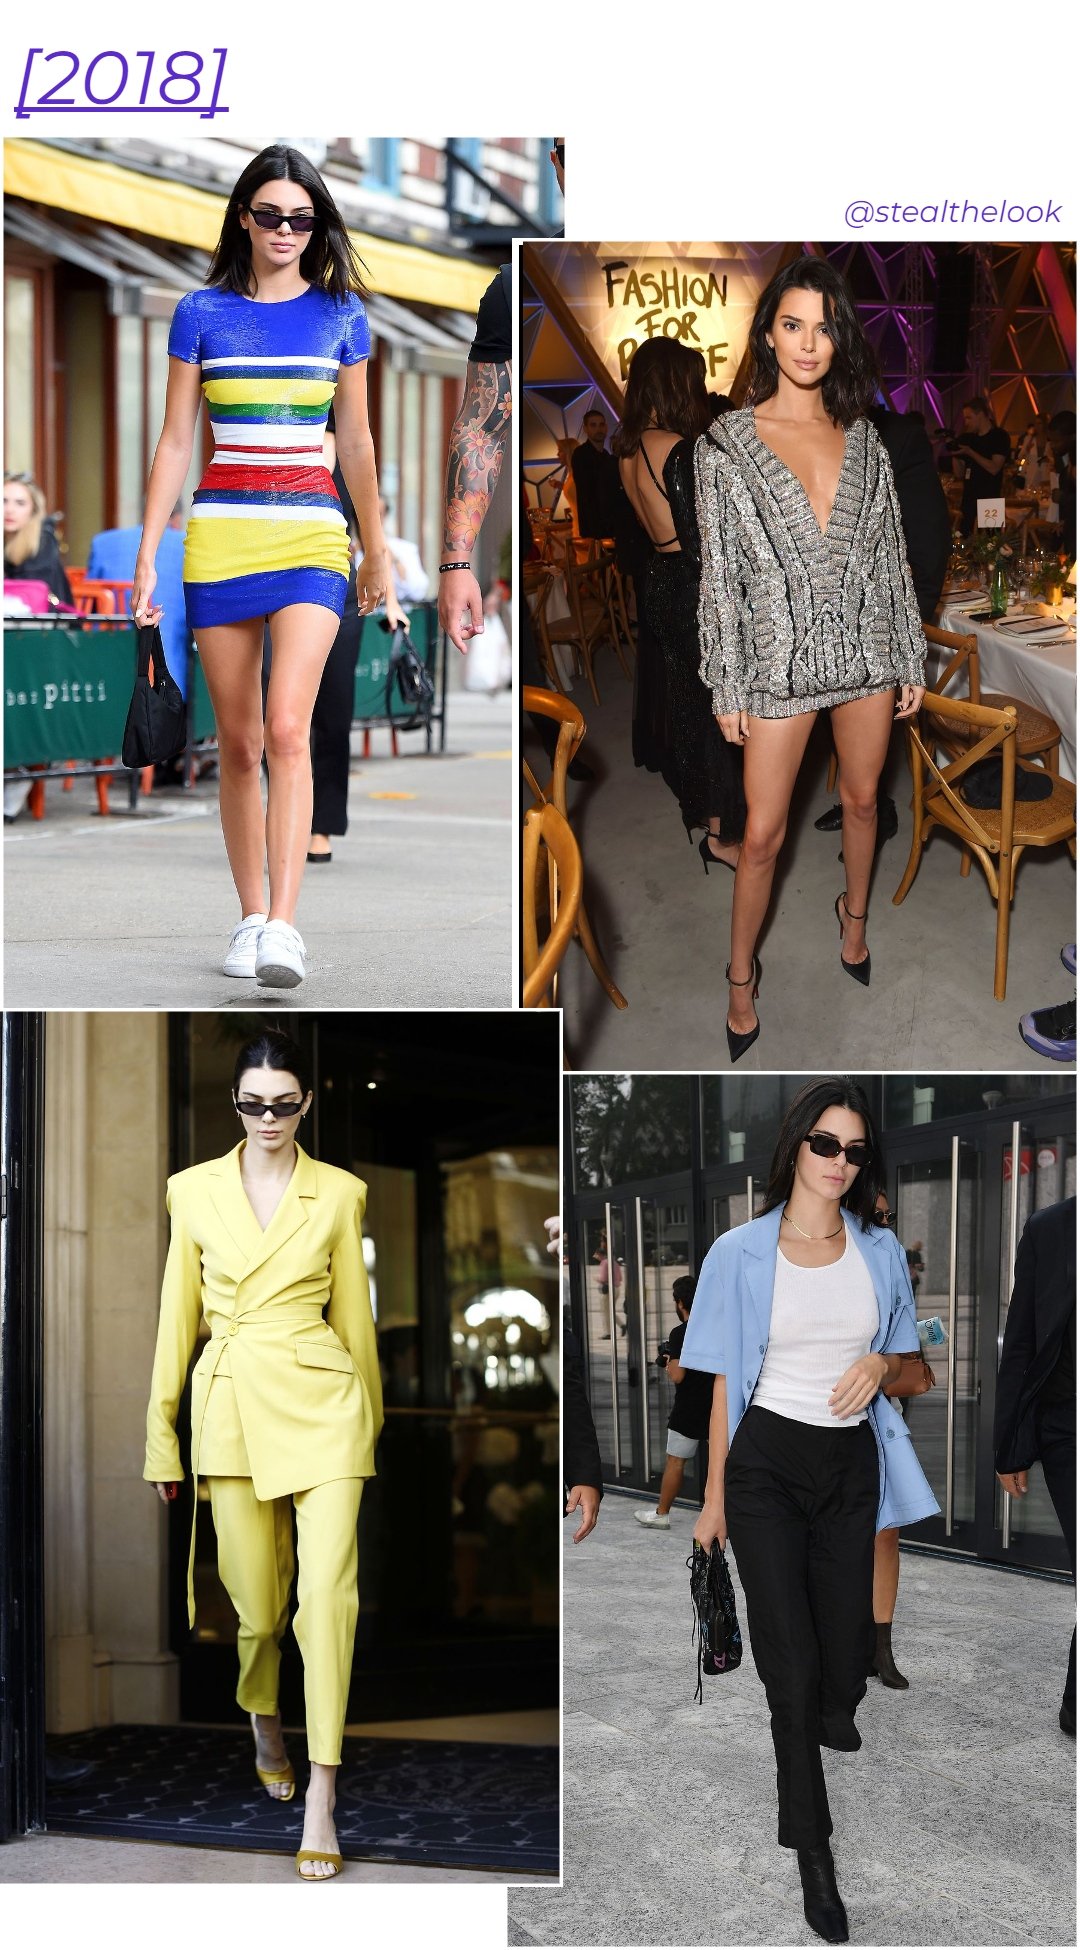 Kendall Jenner - roupas diversas - Kendall Jenner - verão - colagem com 4 fotos diferentes da modelo andando - https://stealthelook.com.br